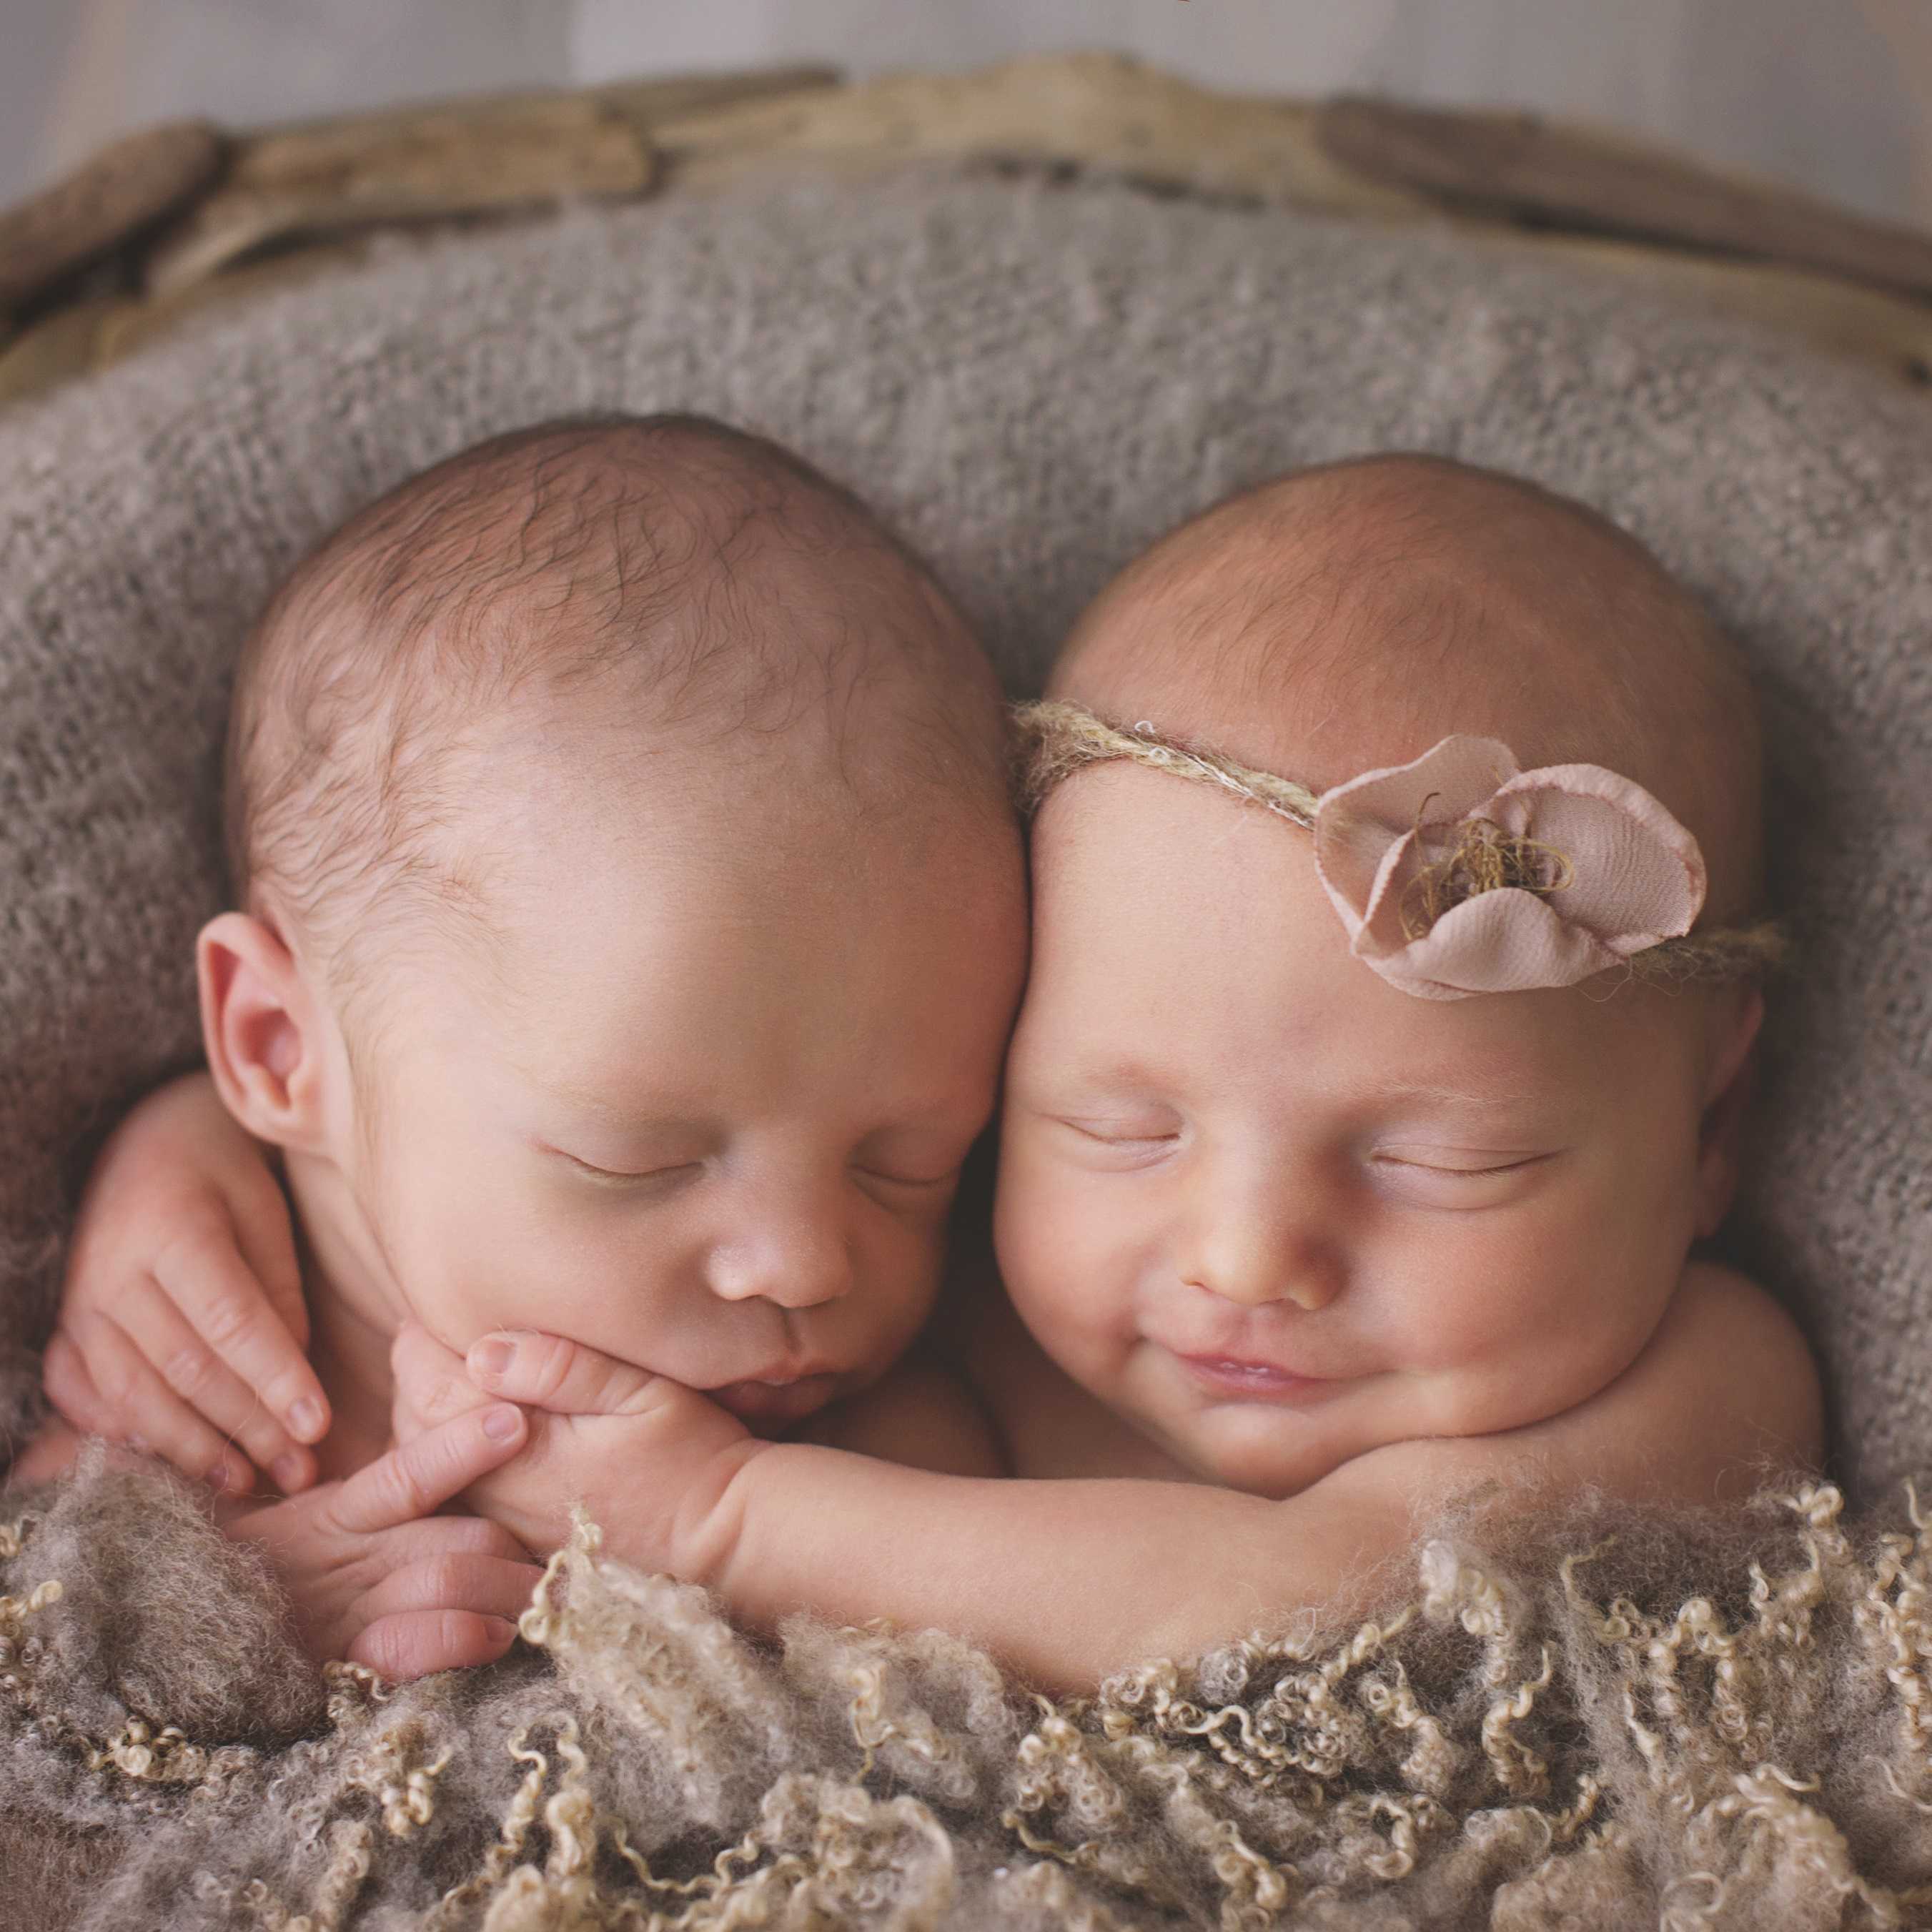 Сонник двойня: к чему снится и что означает сон про двойняшек